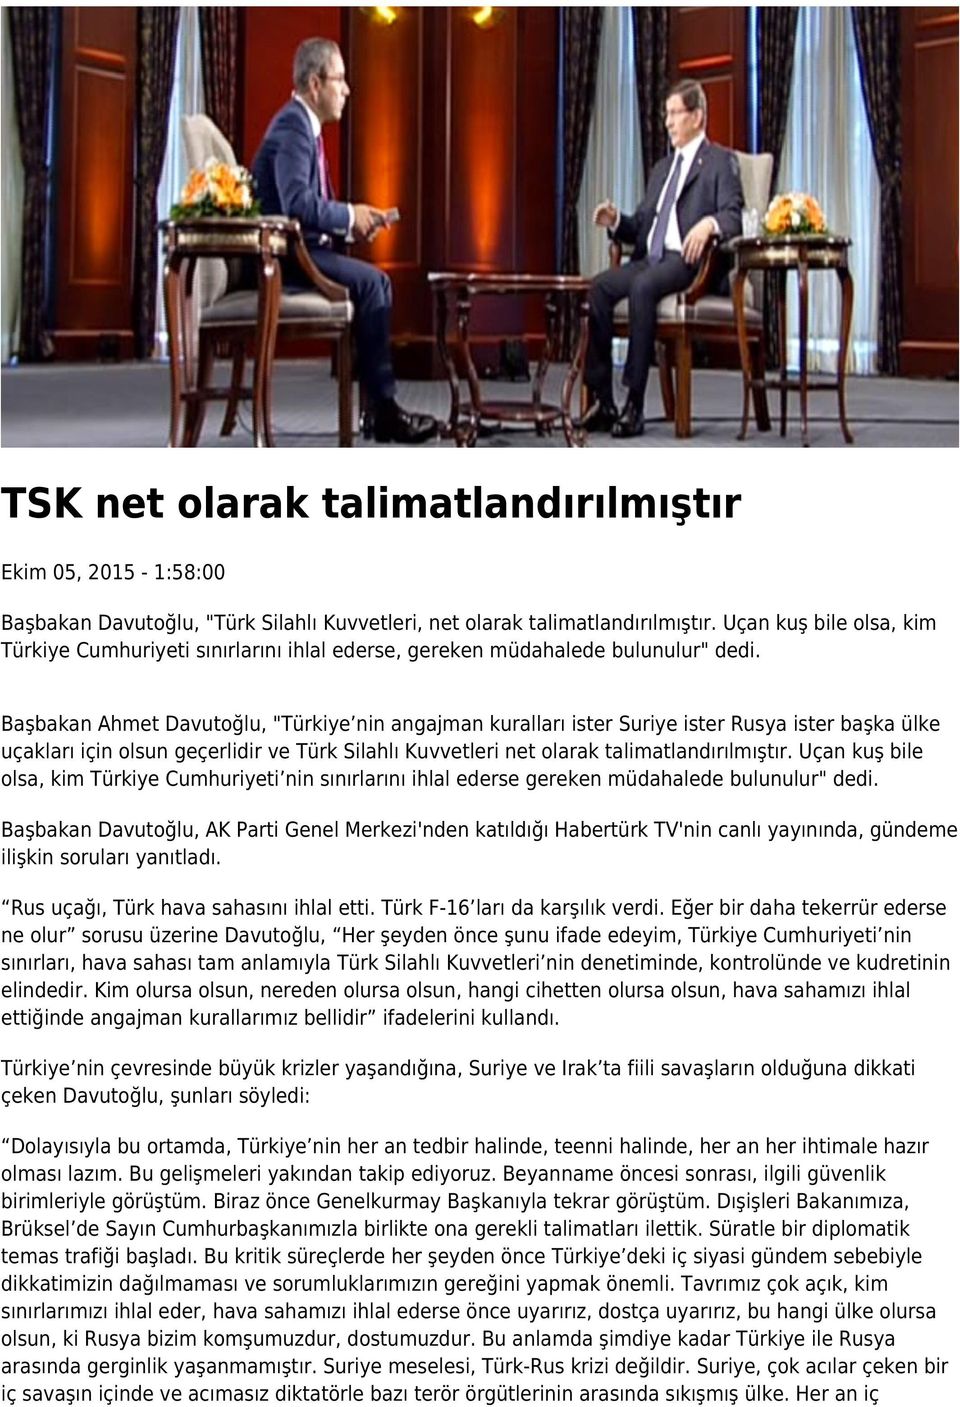 Başbakan Ahmet Davutoğlu, "Türkiye nin angajman kuralları ister Suriye ister Rusya ister başka ülke uçakları için olsun geçerlidir ve Türk Silahlı Kuvvetleri net olarak talimatlandırılmıştır.